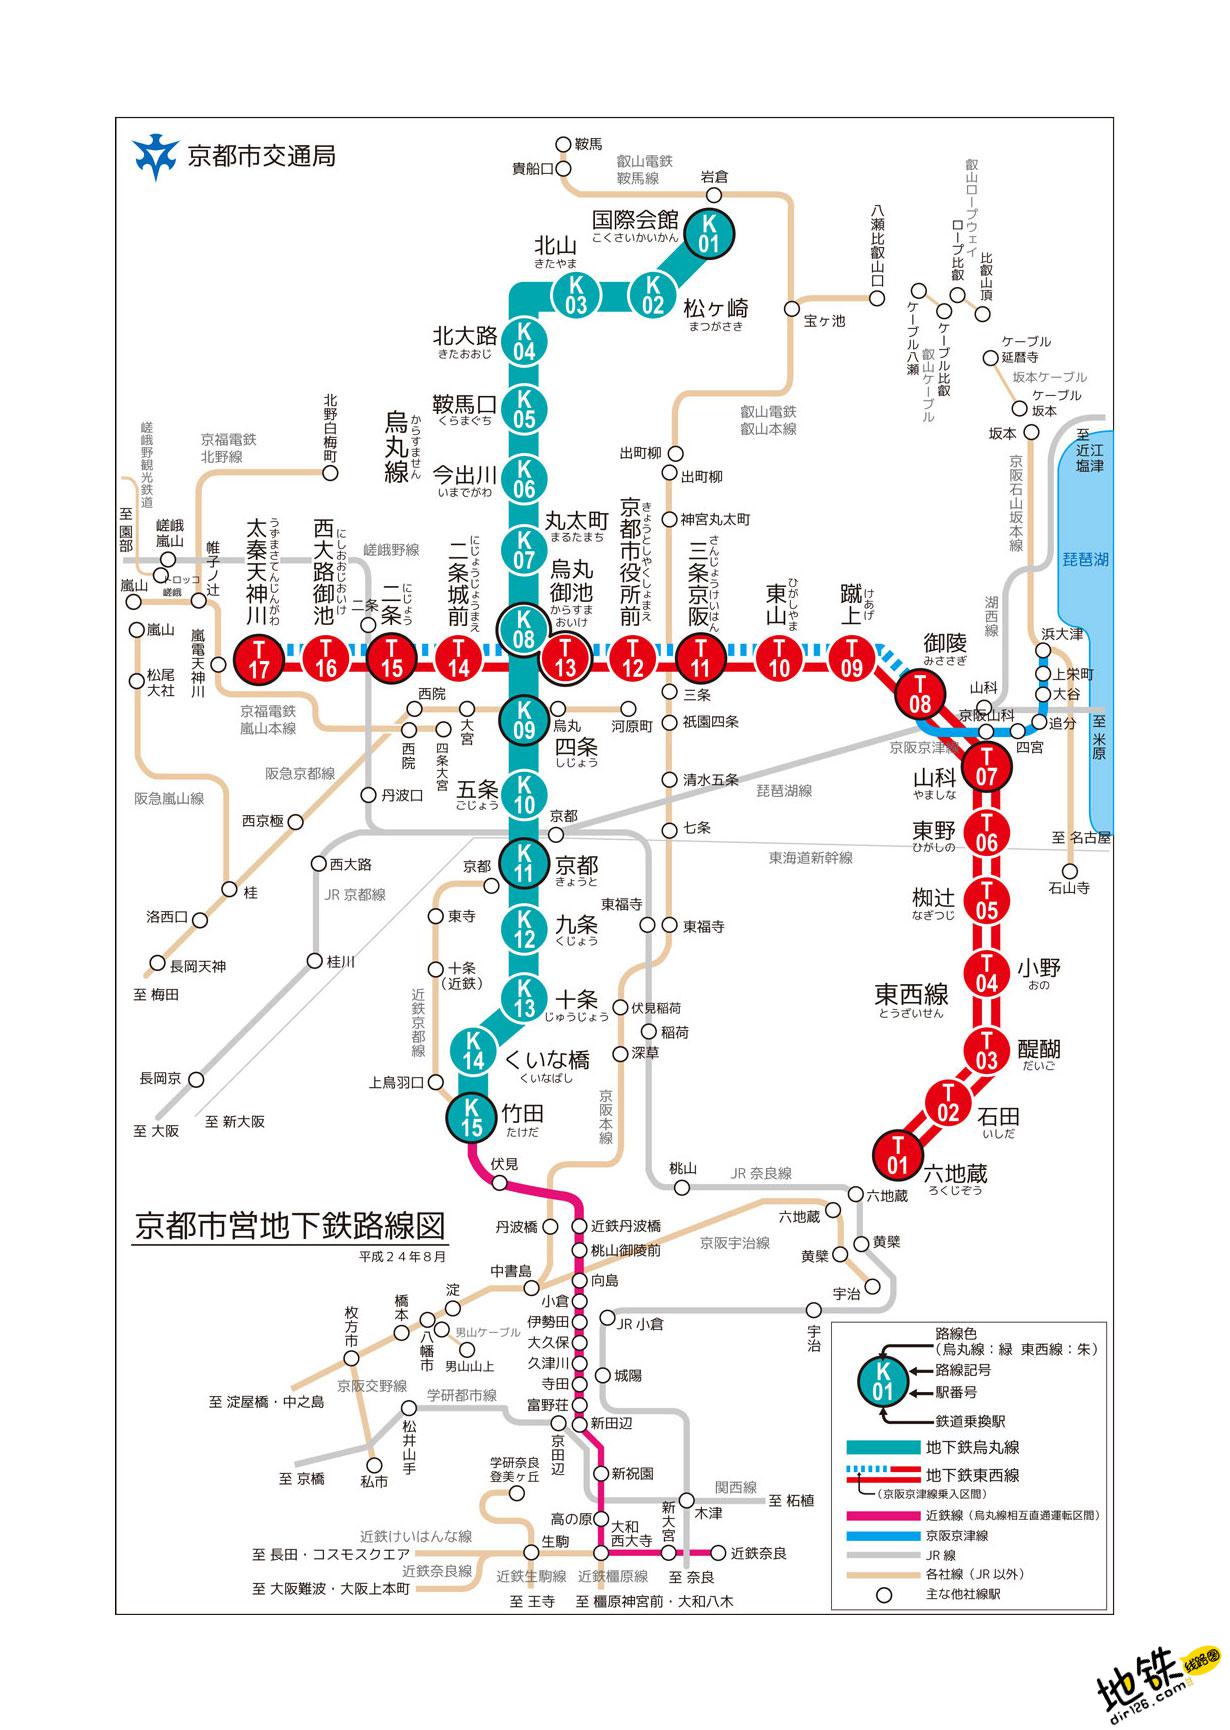 【京都駅の烏丸口】構内図をマップと写真で解説 改札や周辺の地図も